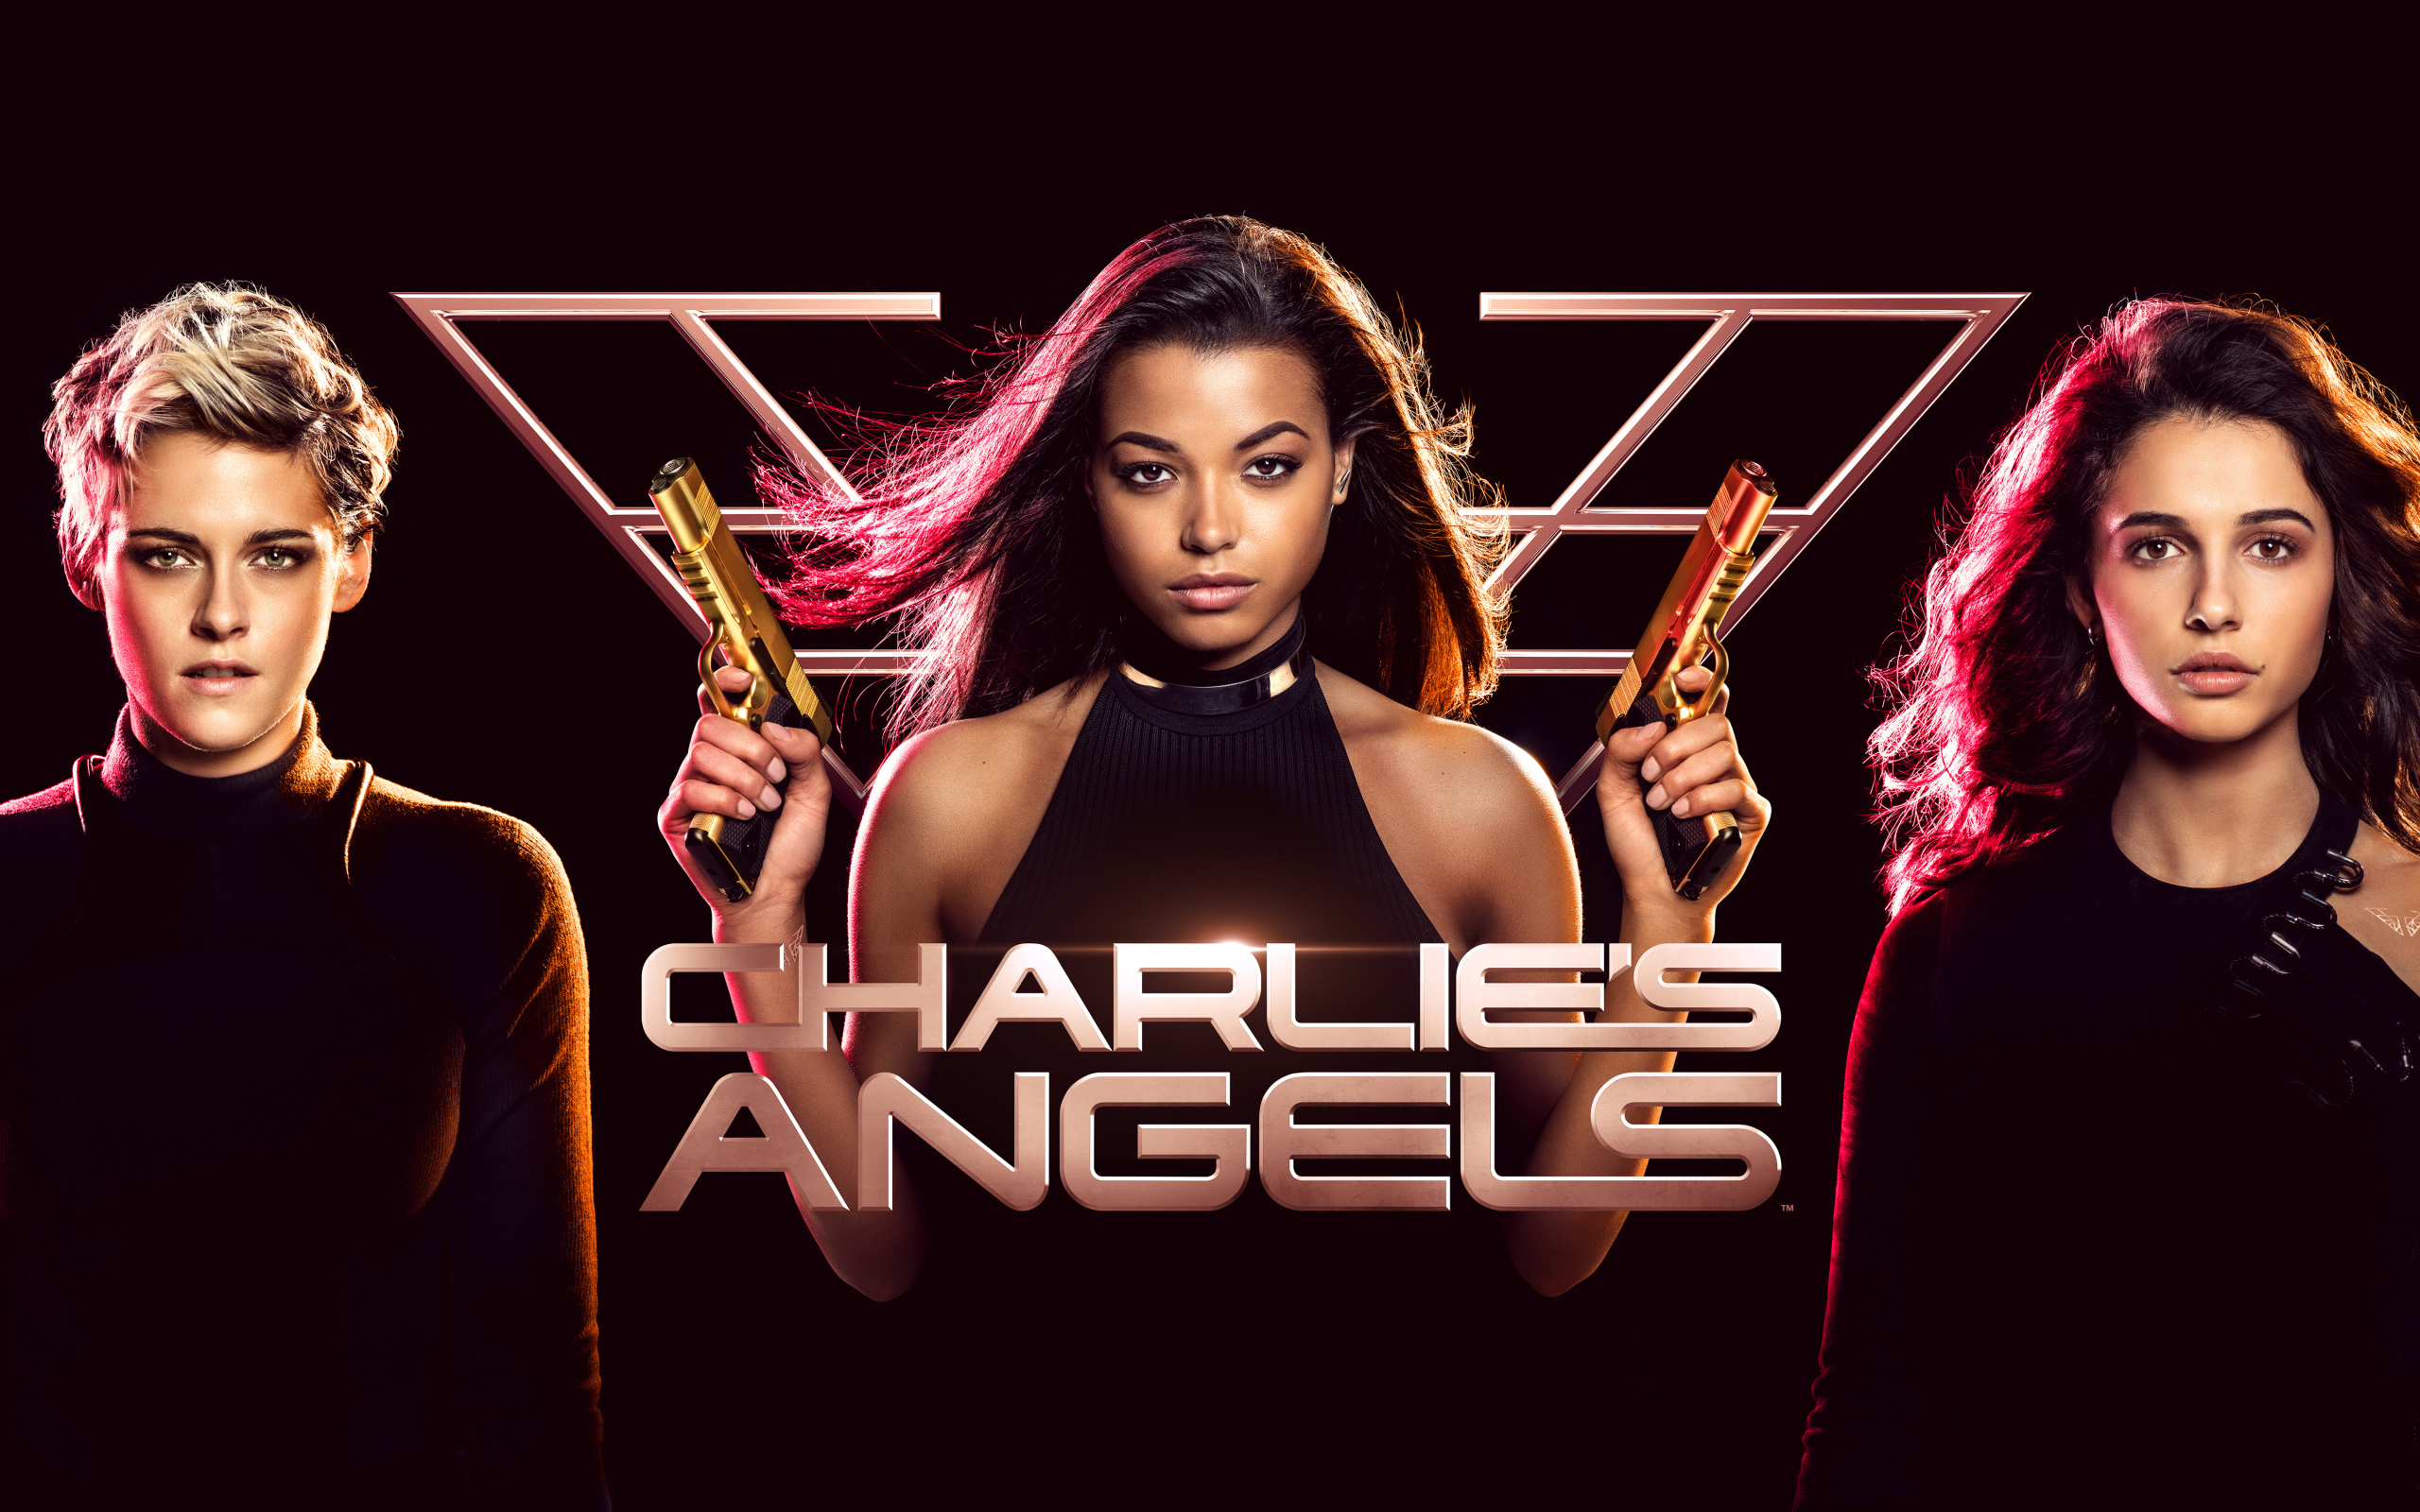 Постер нового фильма Ангелы Чарли, 2019